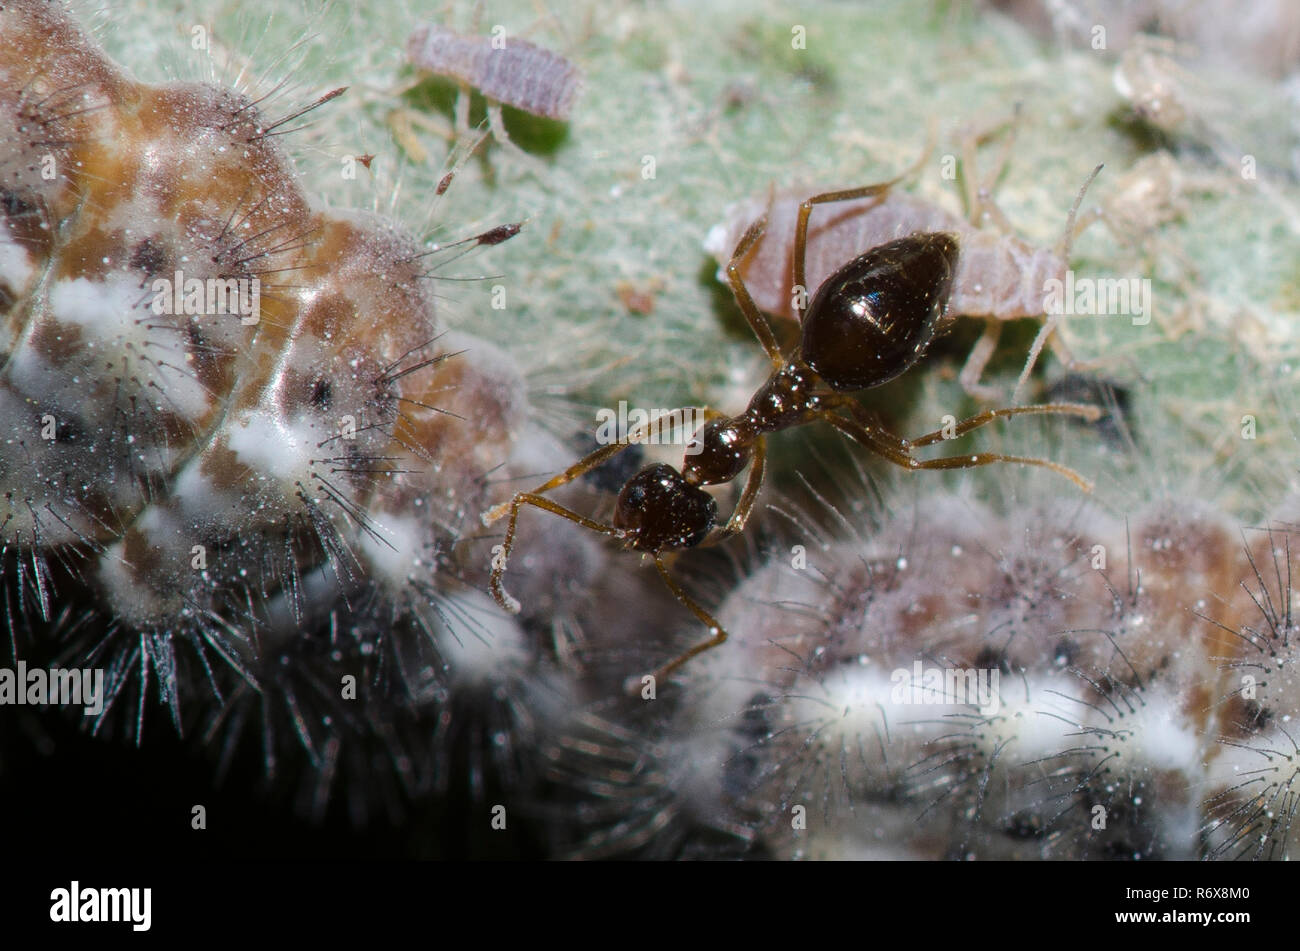 Erntemaschinen, Feniseca tarquinius, Larven fressen an Woolly Ahorn Blattläuse, Neoprociphilus aceris, mit tendenziell falsch Honig, Prenolepis imparis Ant Stockfoto